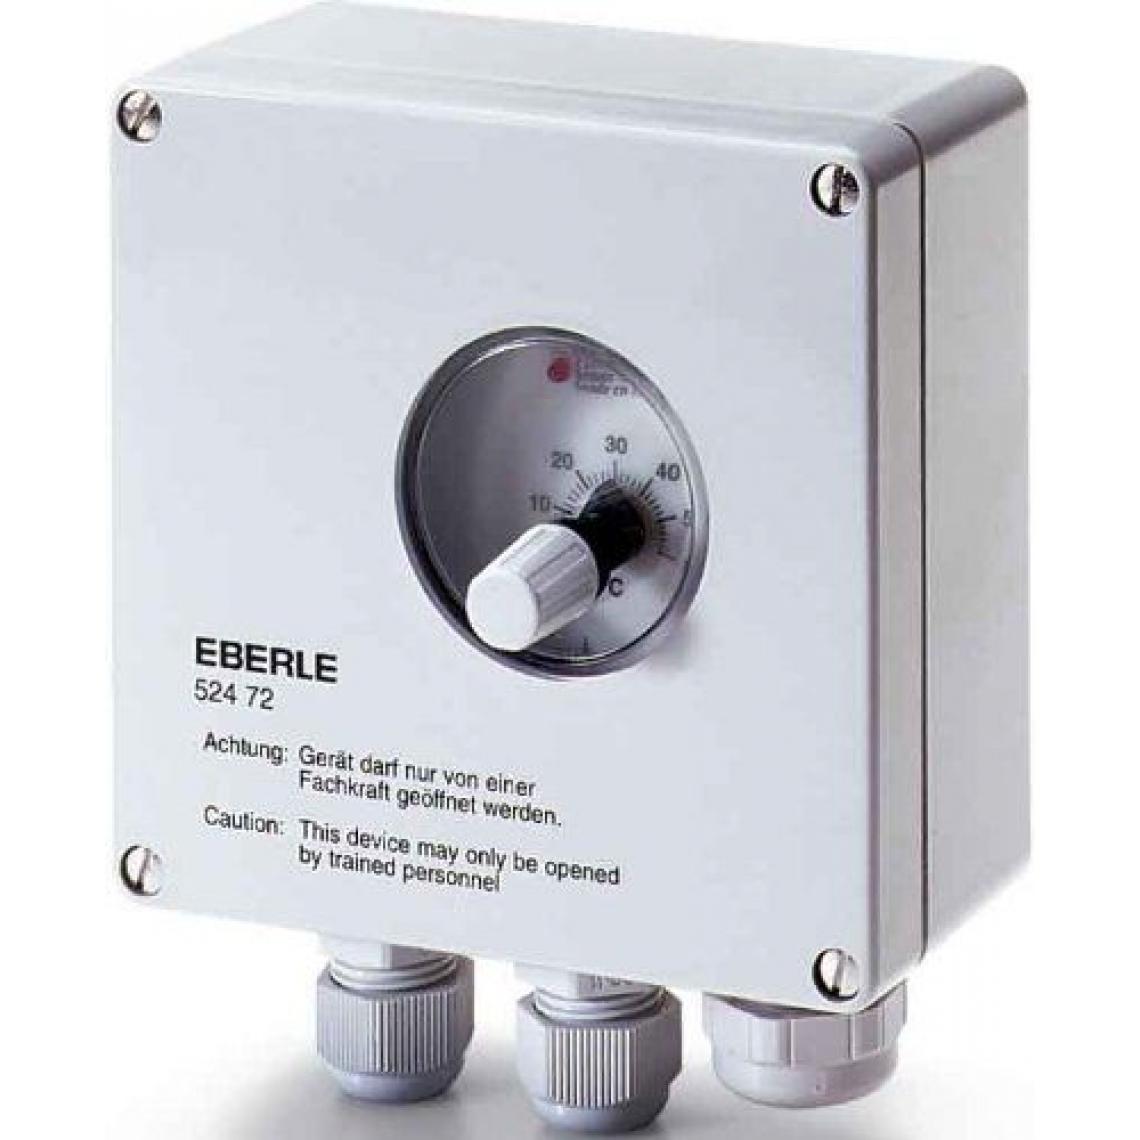 Inconnu - Régulateur de température universel UTR-60 Eberle-Thermostat - Thermostat